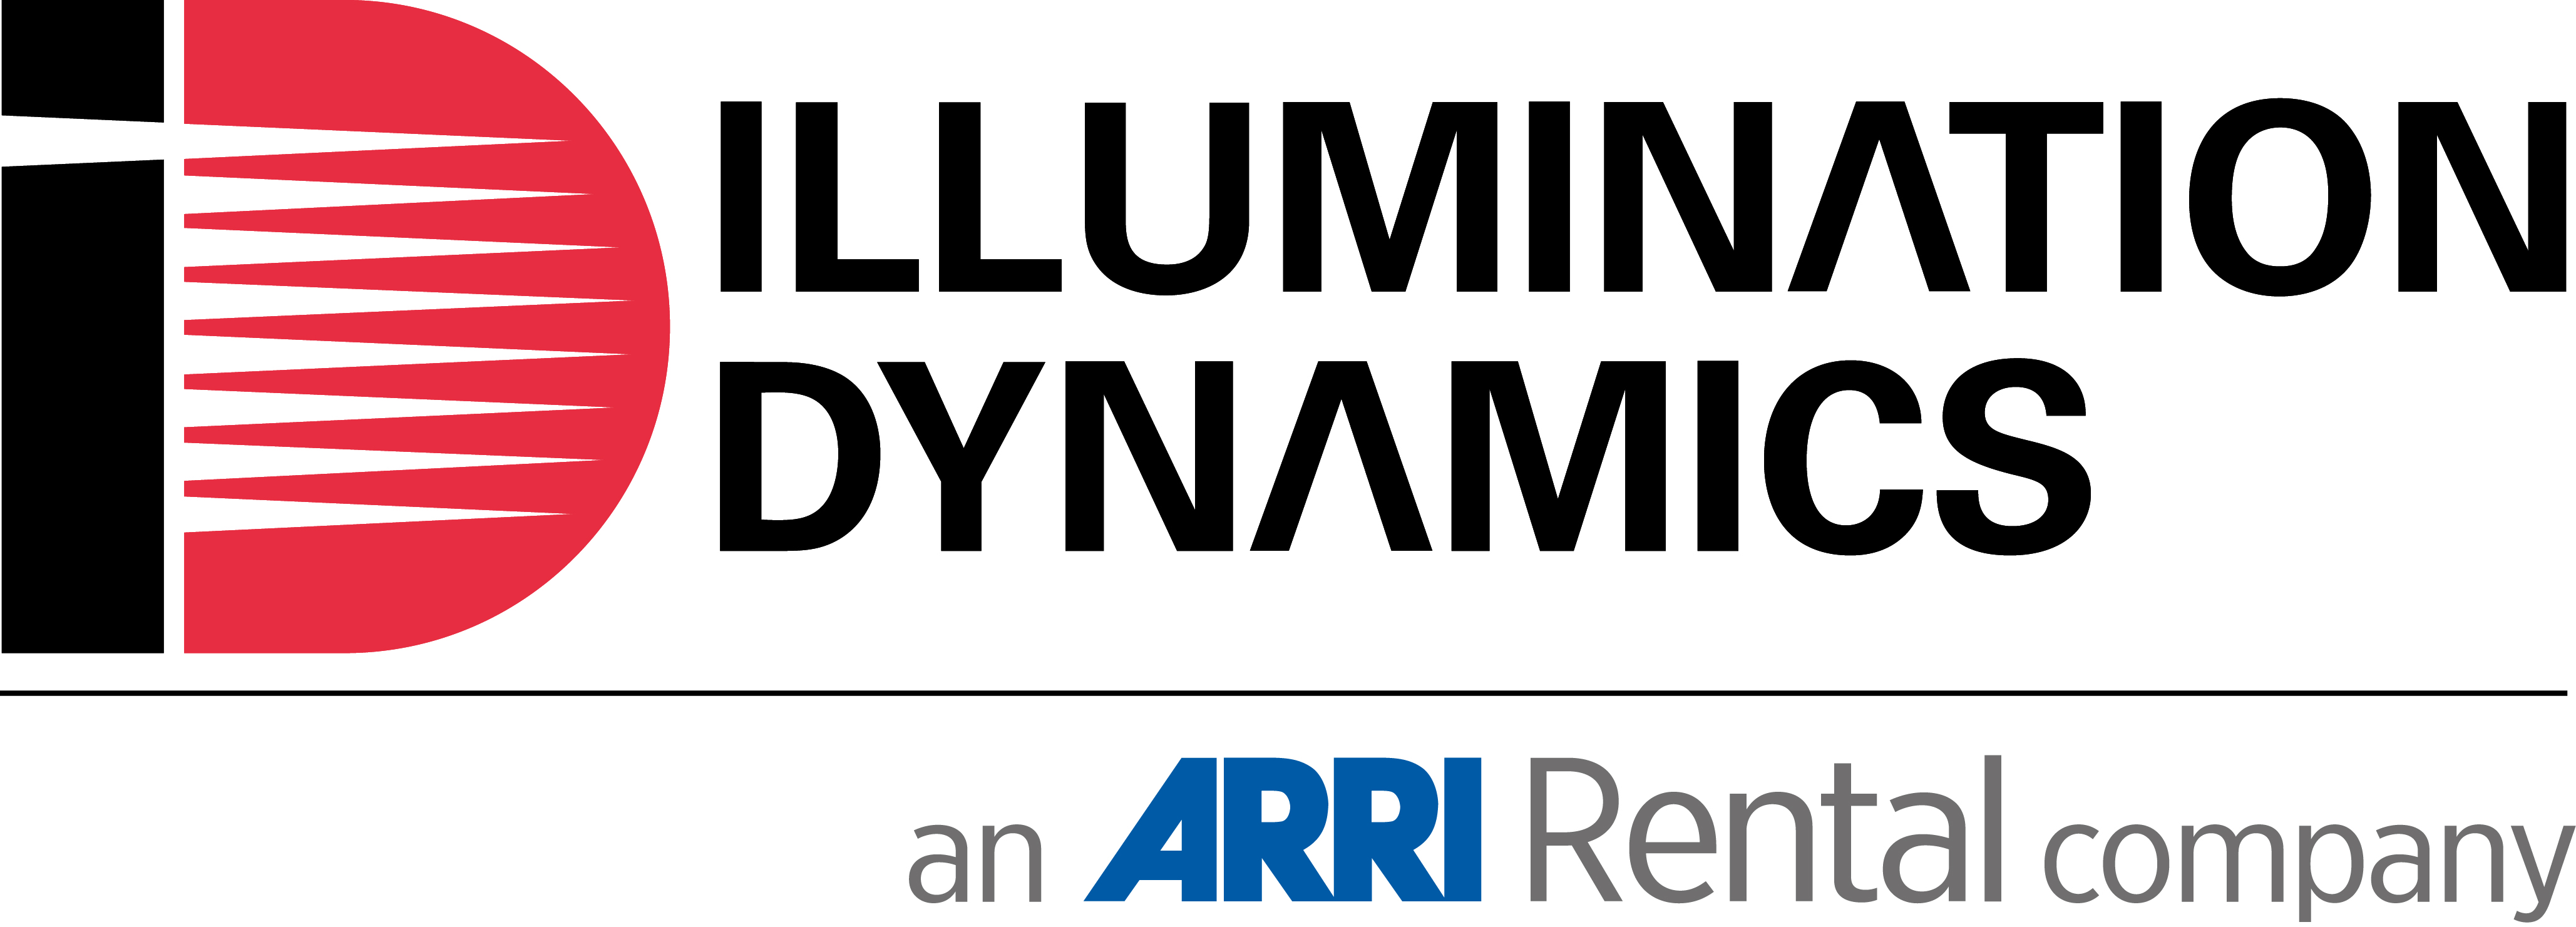 illumination-dynamics-logo-2014